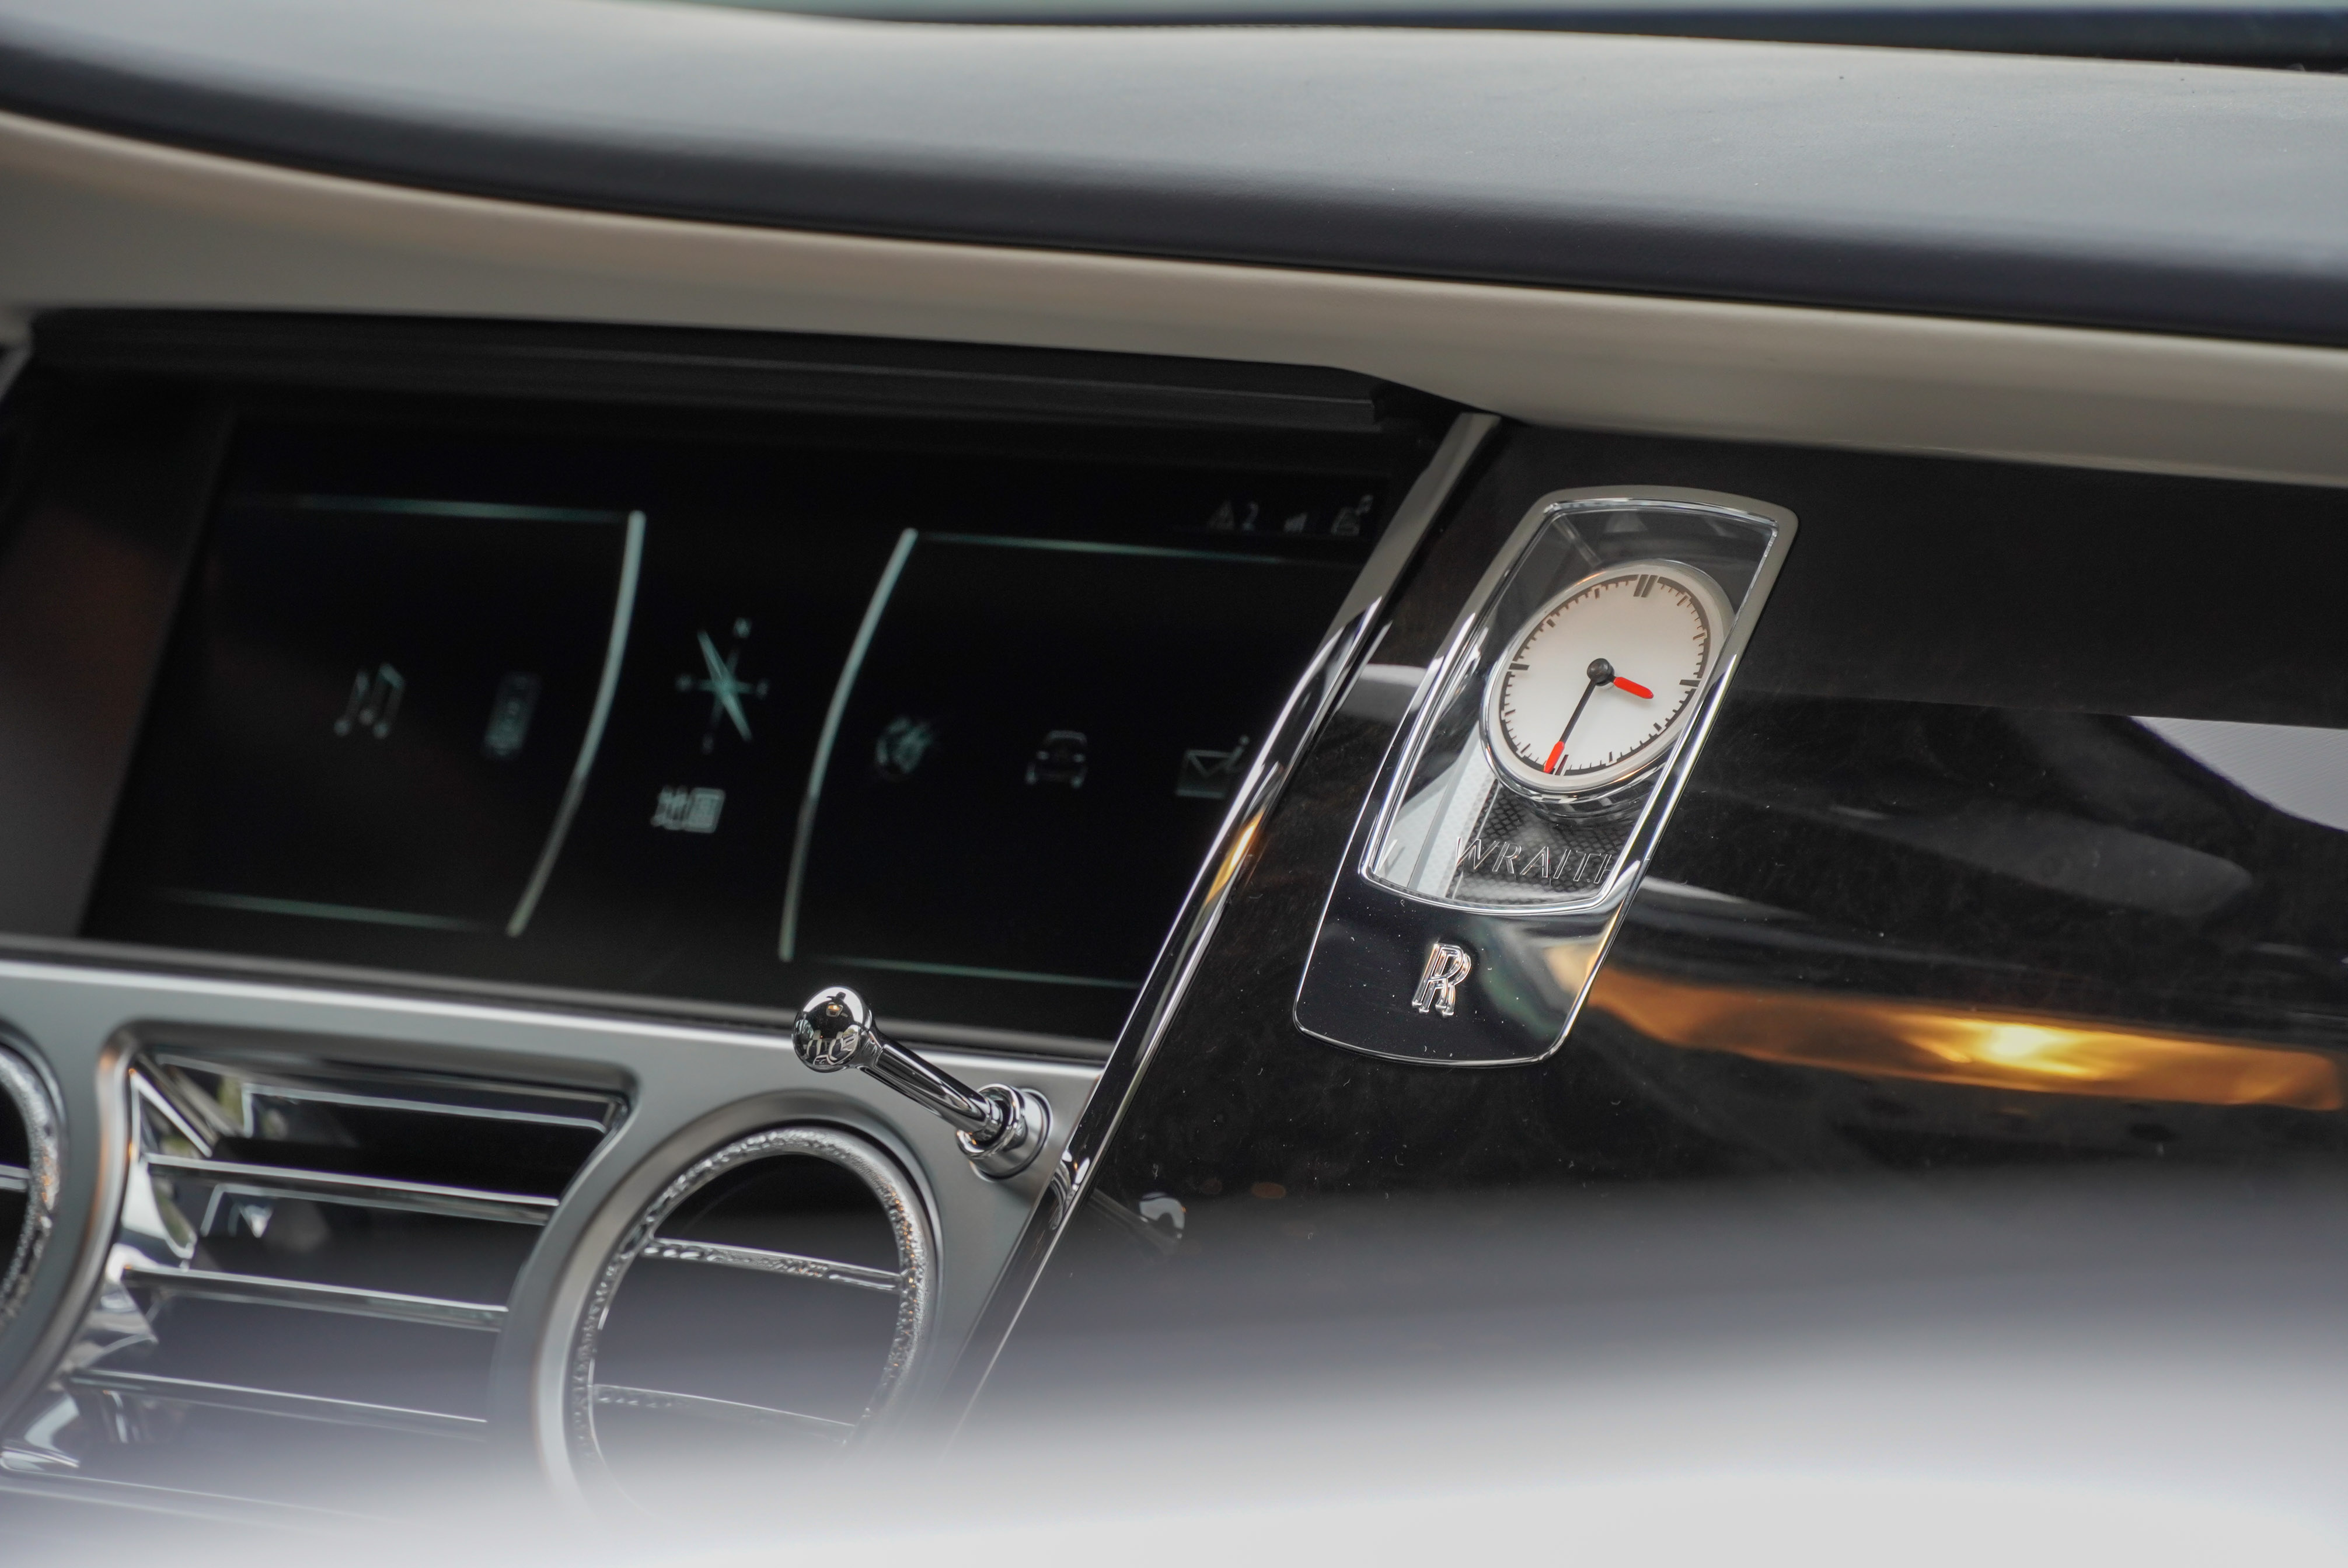 中控螢幕右側有 Rolls-Royce 時鐘。